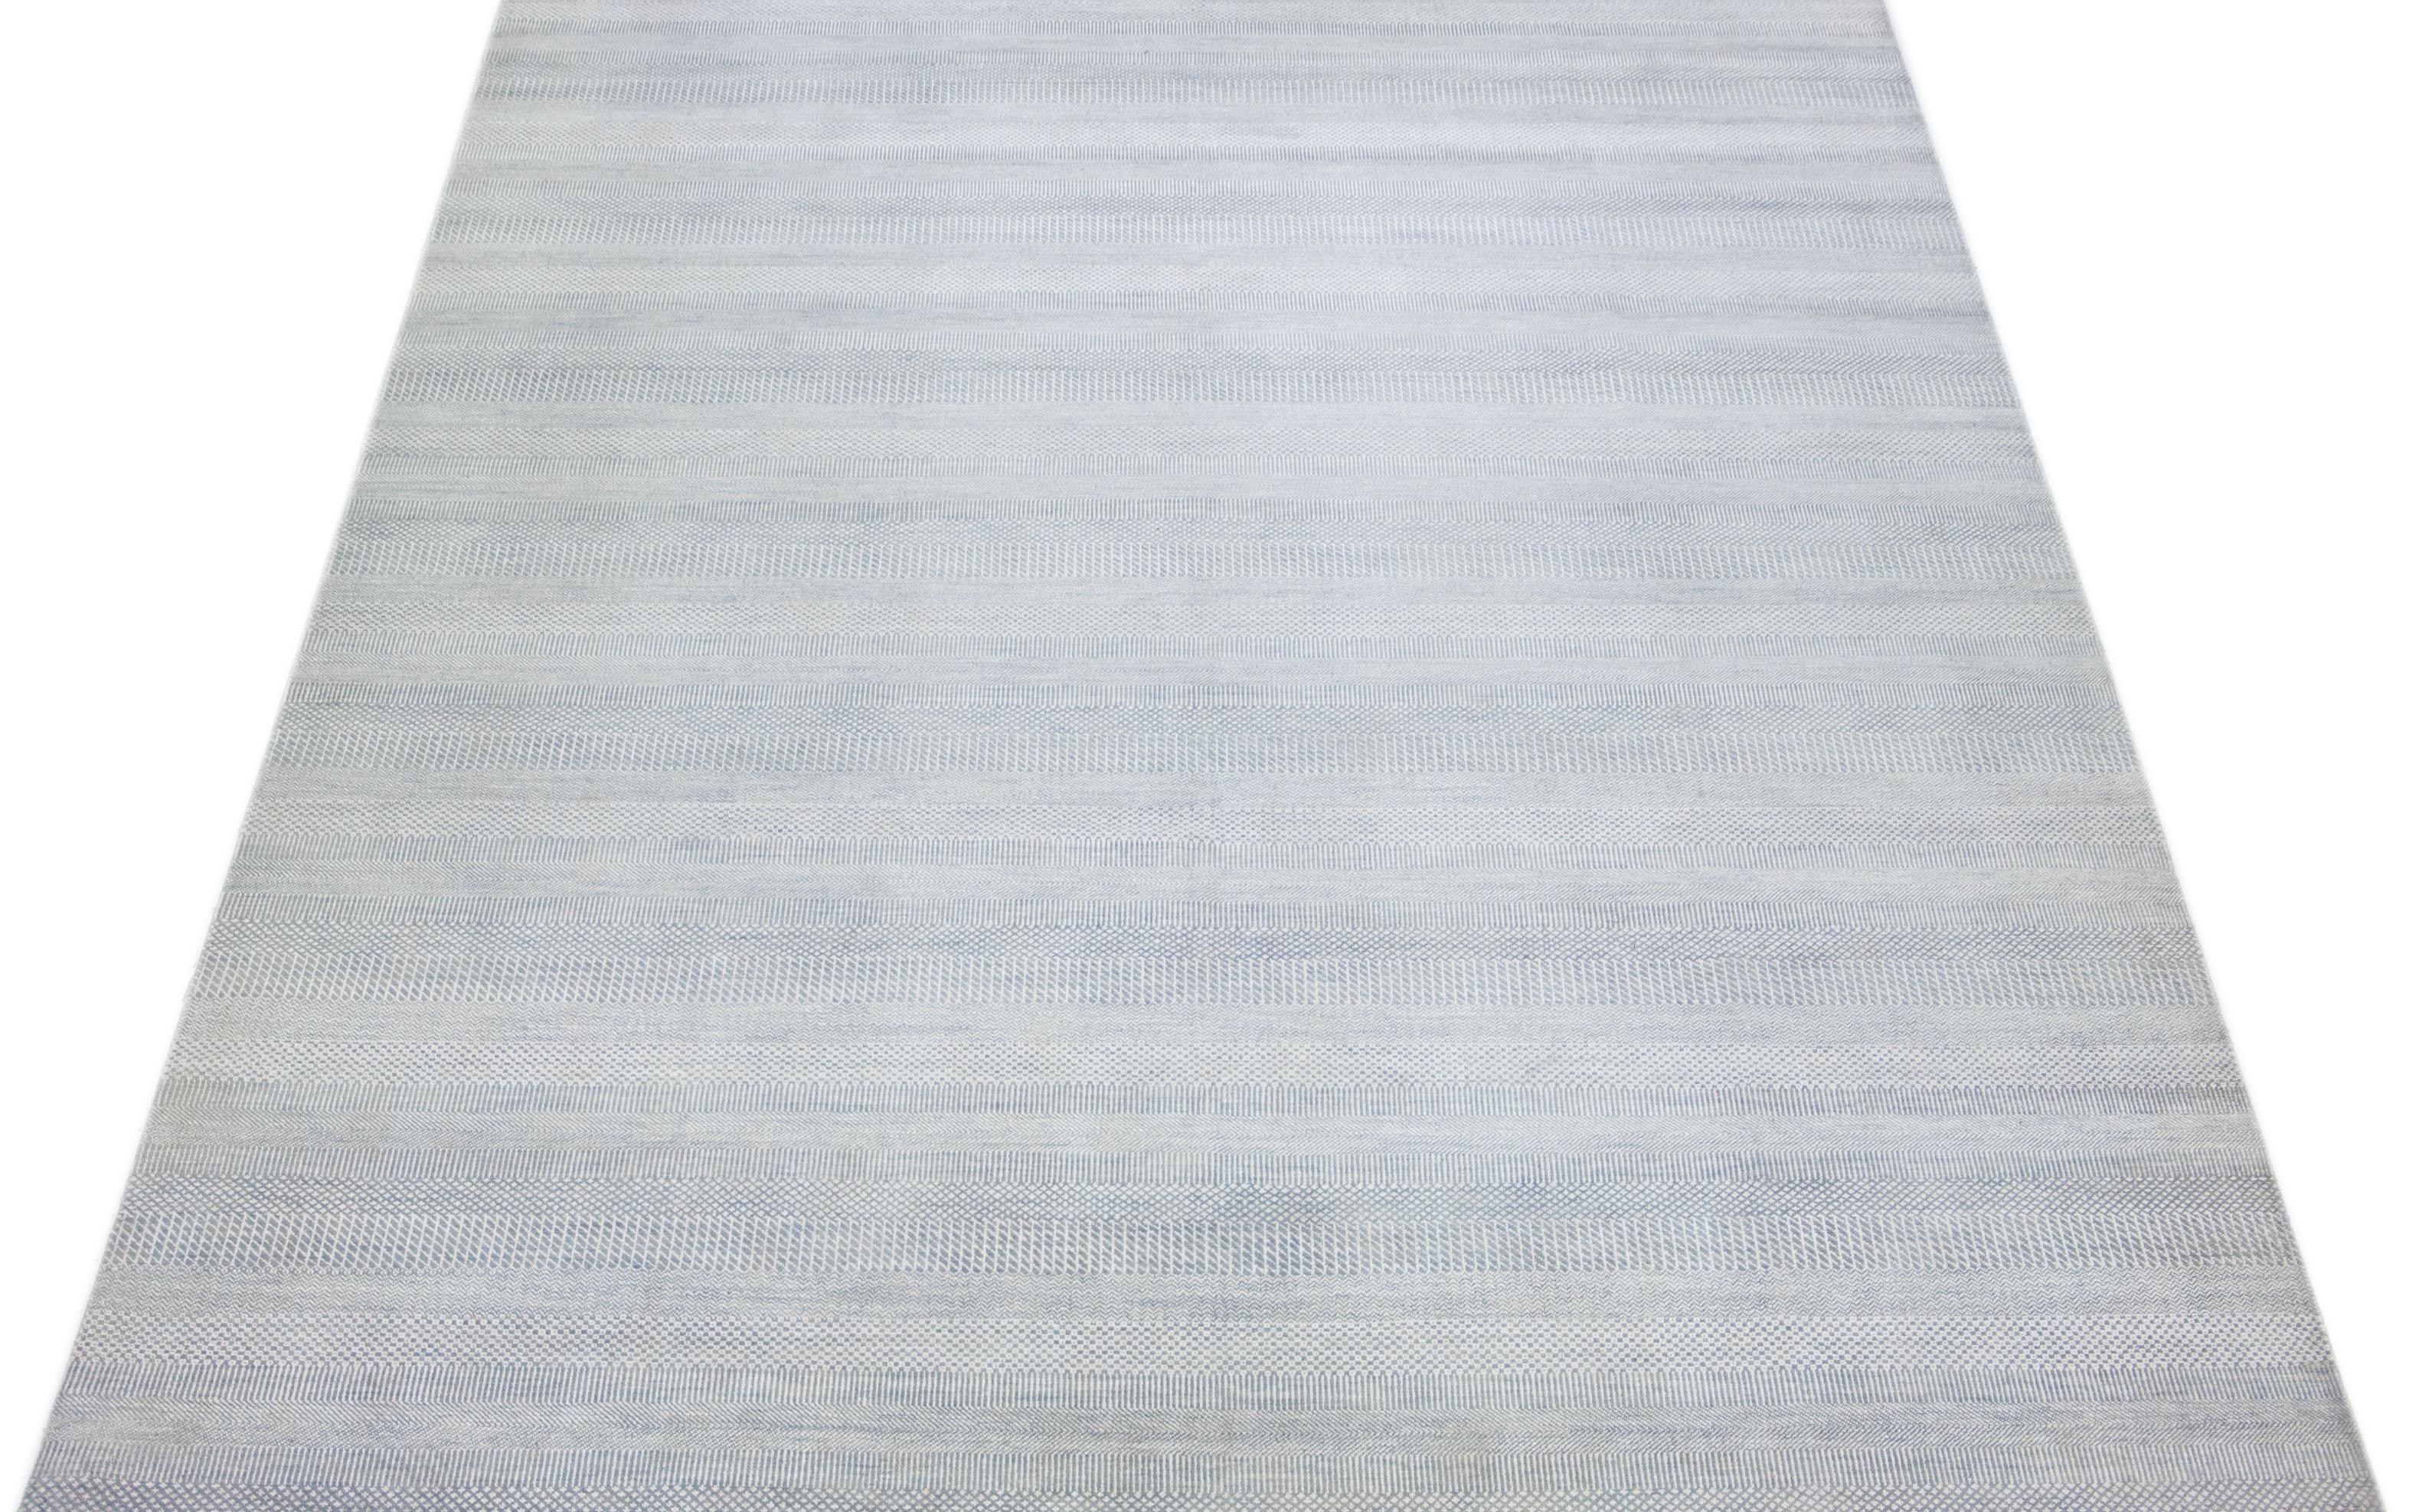 Dieser elegante, handgeknüpfte Teppich ist aus Wolle gefertigt. Es zeichnet sich durch ein dezentes hellblaues Farbschema aus, das durch ein geometrisches Allover-Muster akzentuiert wird - eine ideale Ergänzung für jede moderne